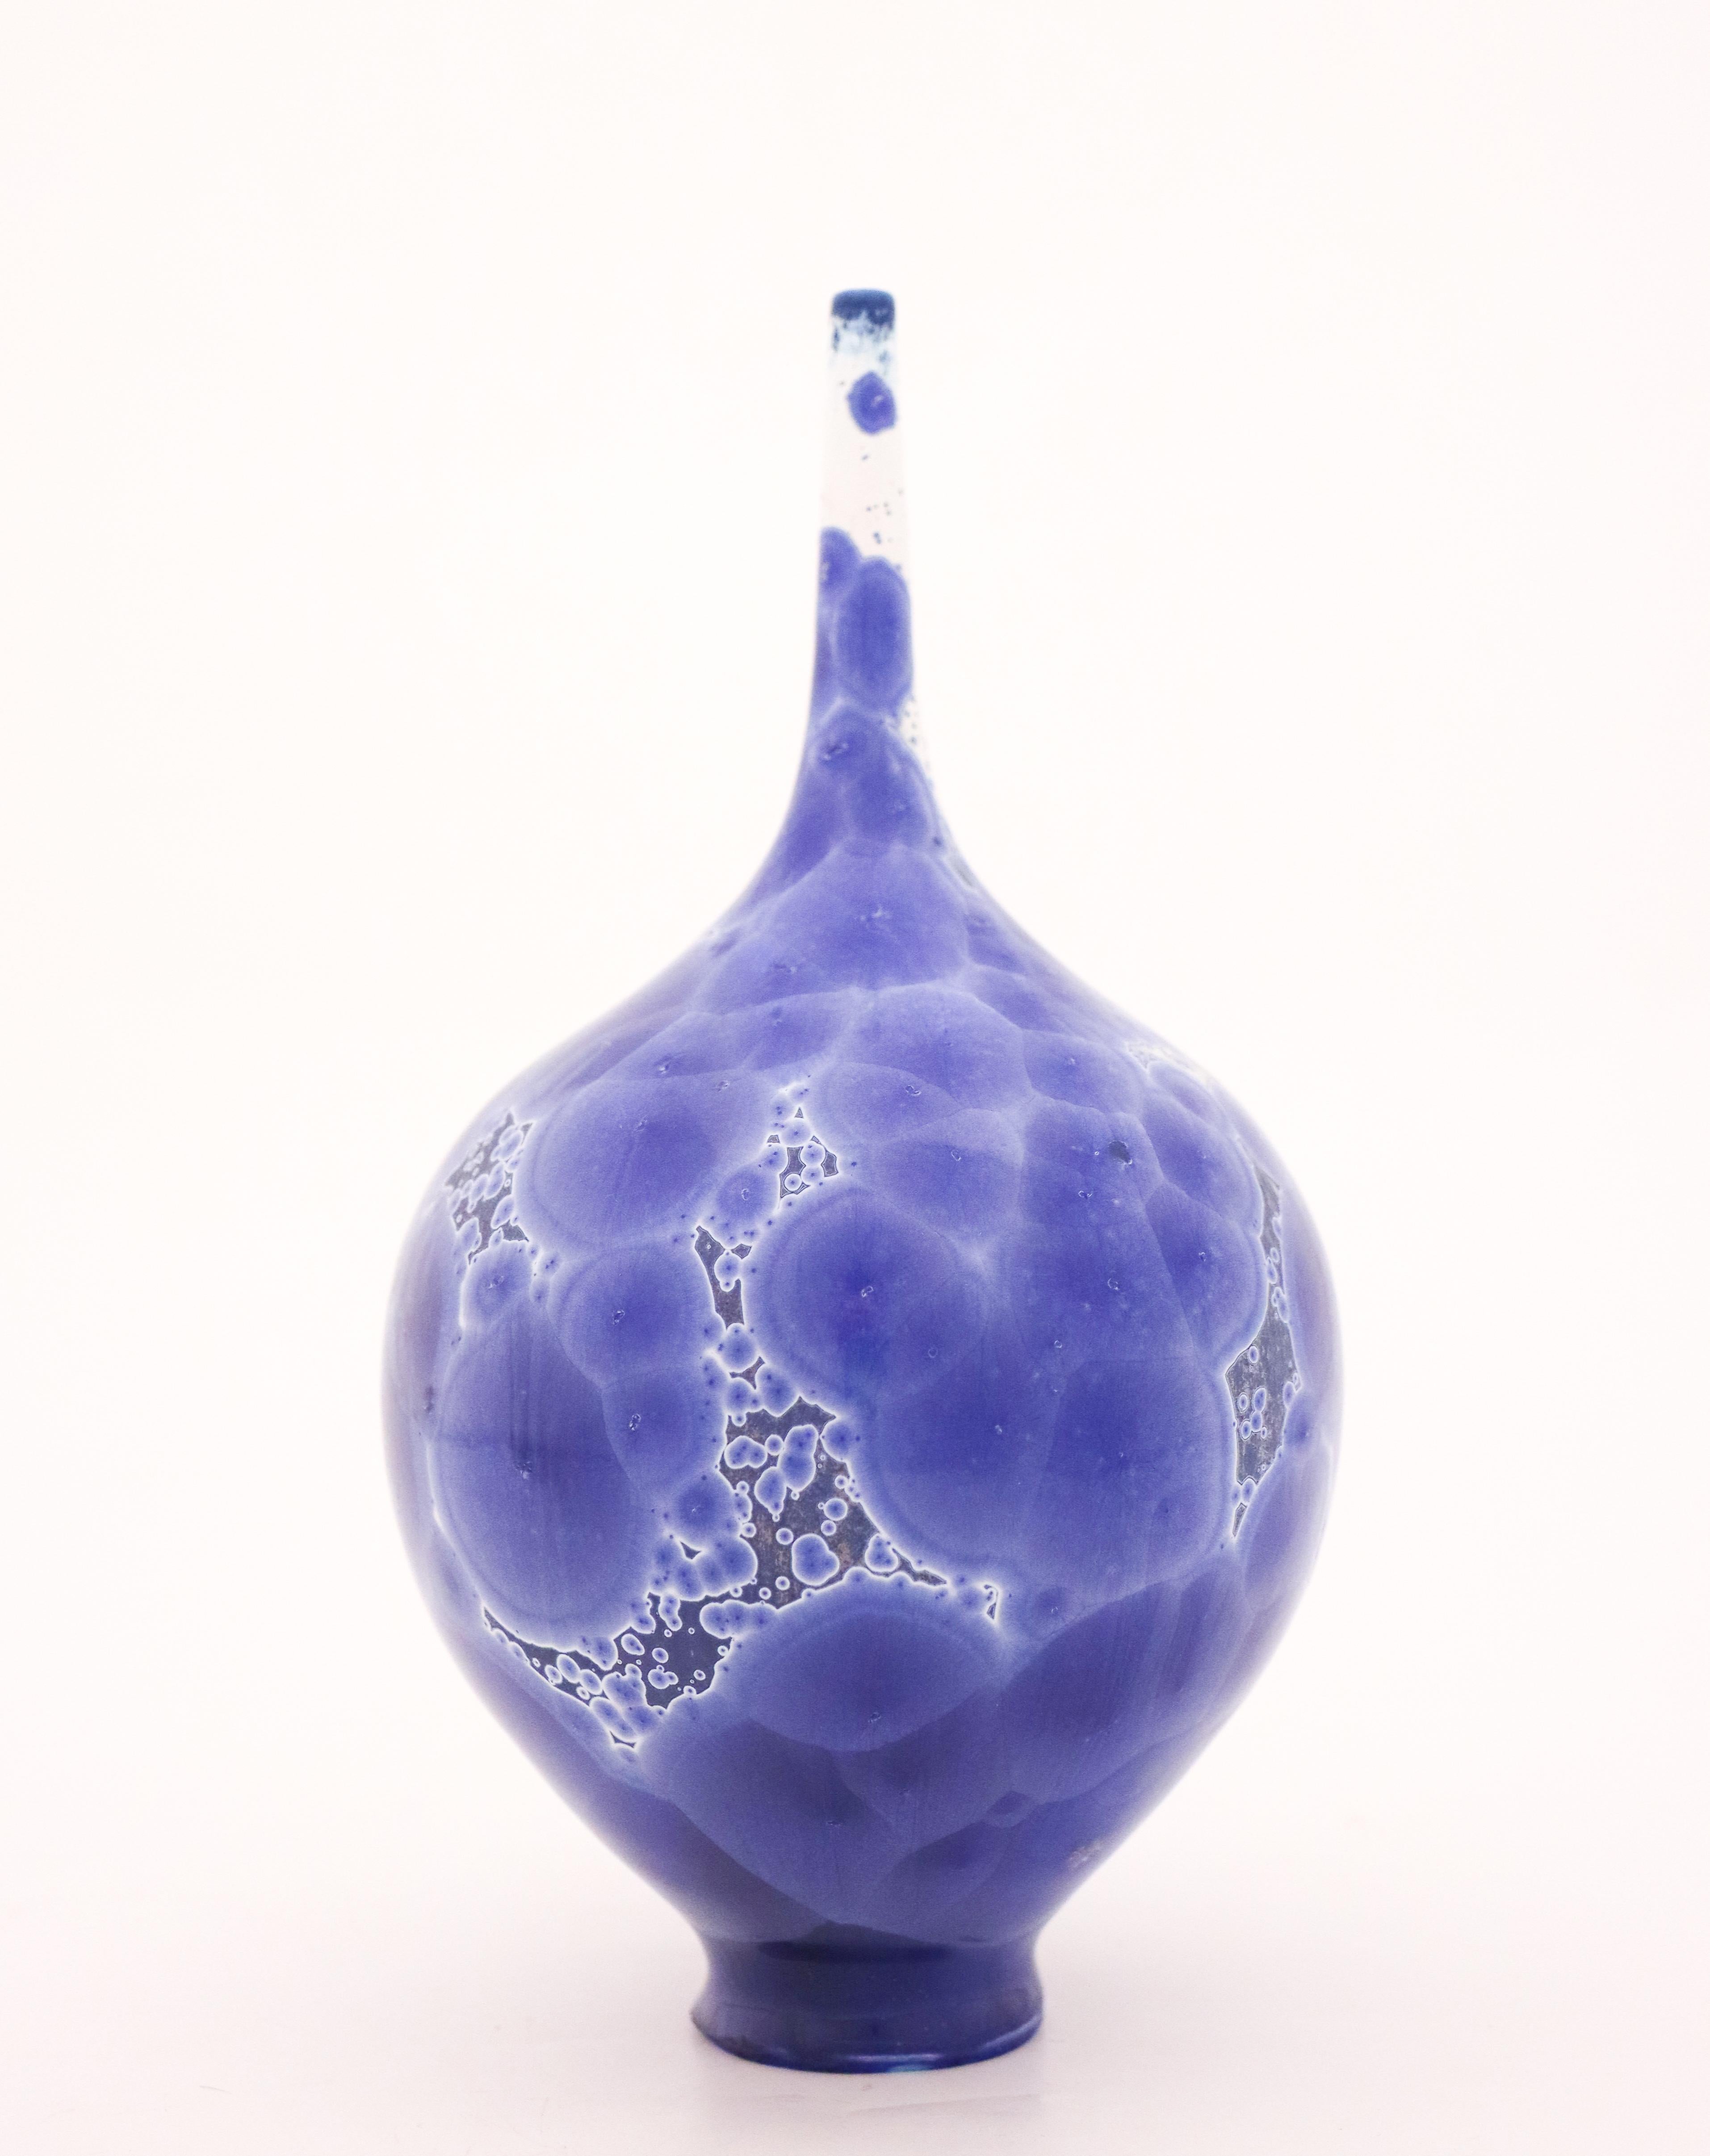 Scandinavian Modern Vase by Isak Isaksson, Blue & White Glaze, Contemporary Swedish Ceramicist